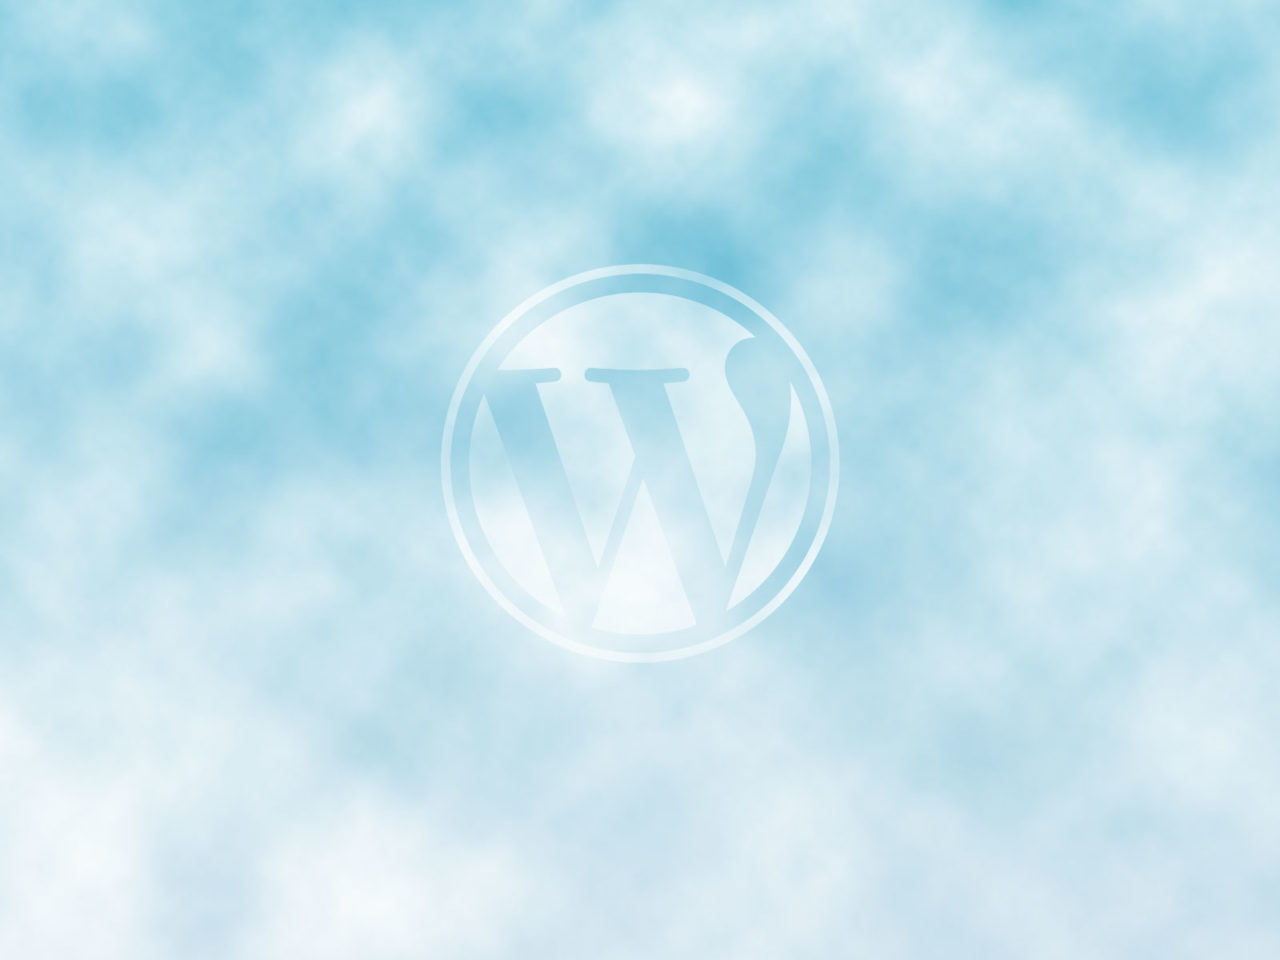 WordPress in the cloud